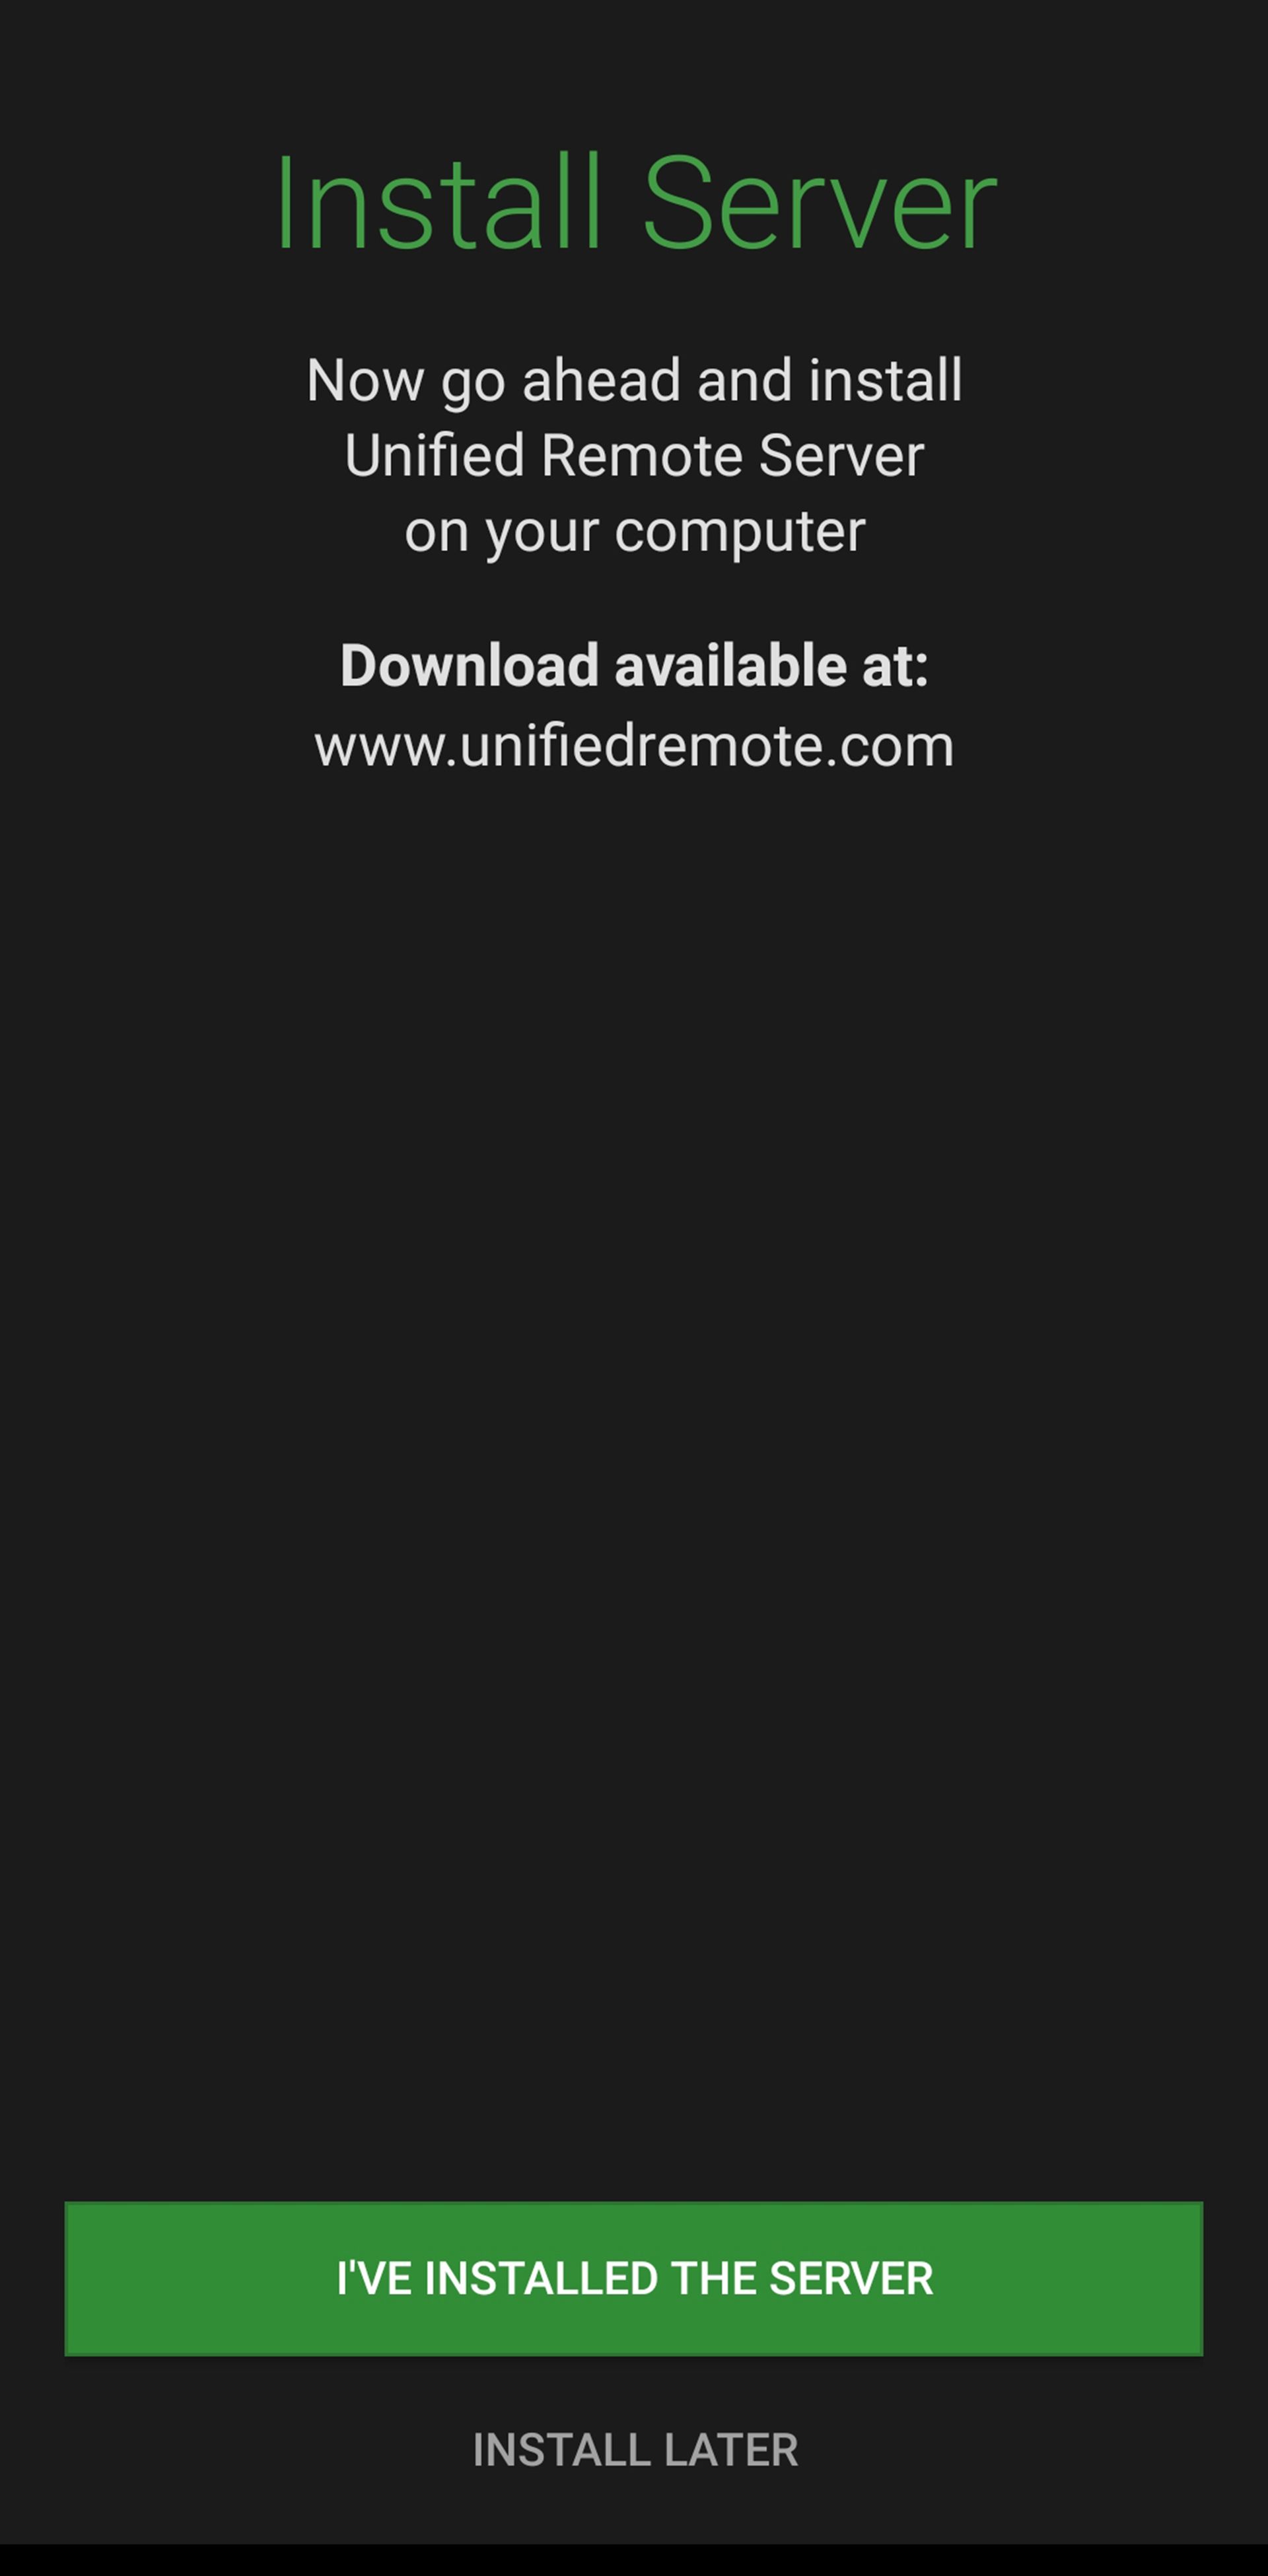 صفحه نصب سرور اپلیکیشن Unified در گوشی هوشمند و دکمه سبز رنگی در پایین صفحه